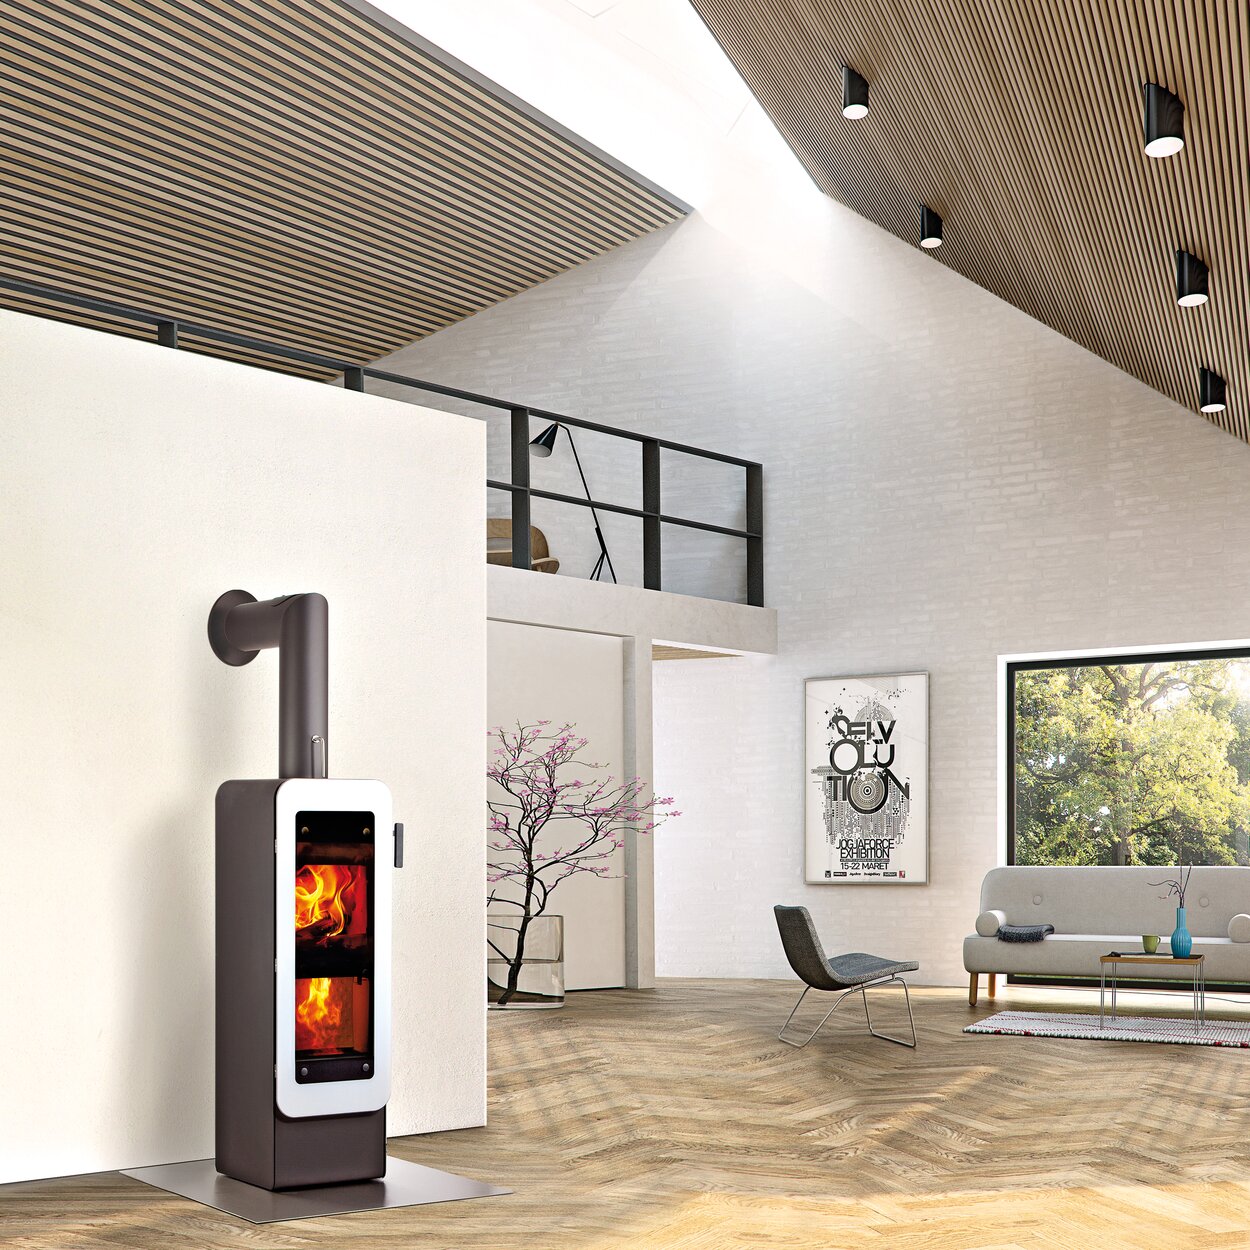 Poêle à bois bionic fire EVO de couleur noire avec porte de foyer plein verre blanc dans un loft moderne